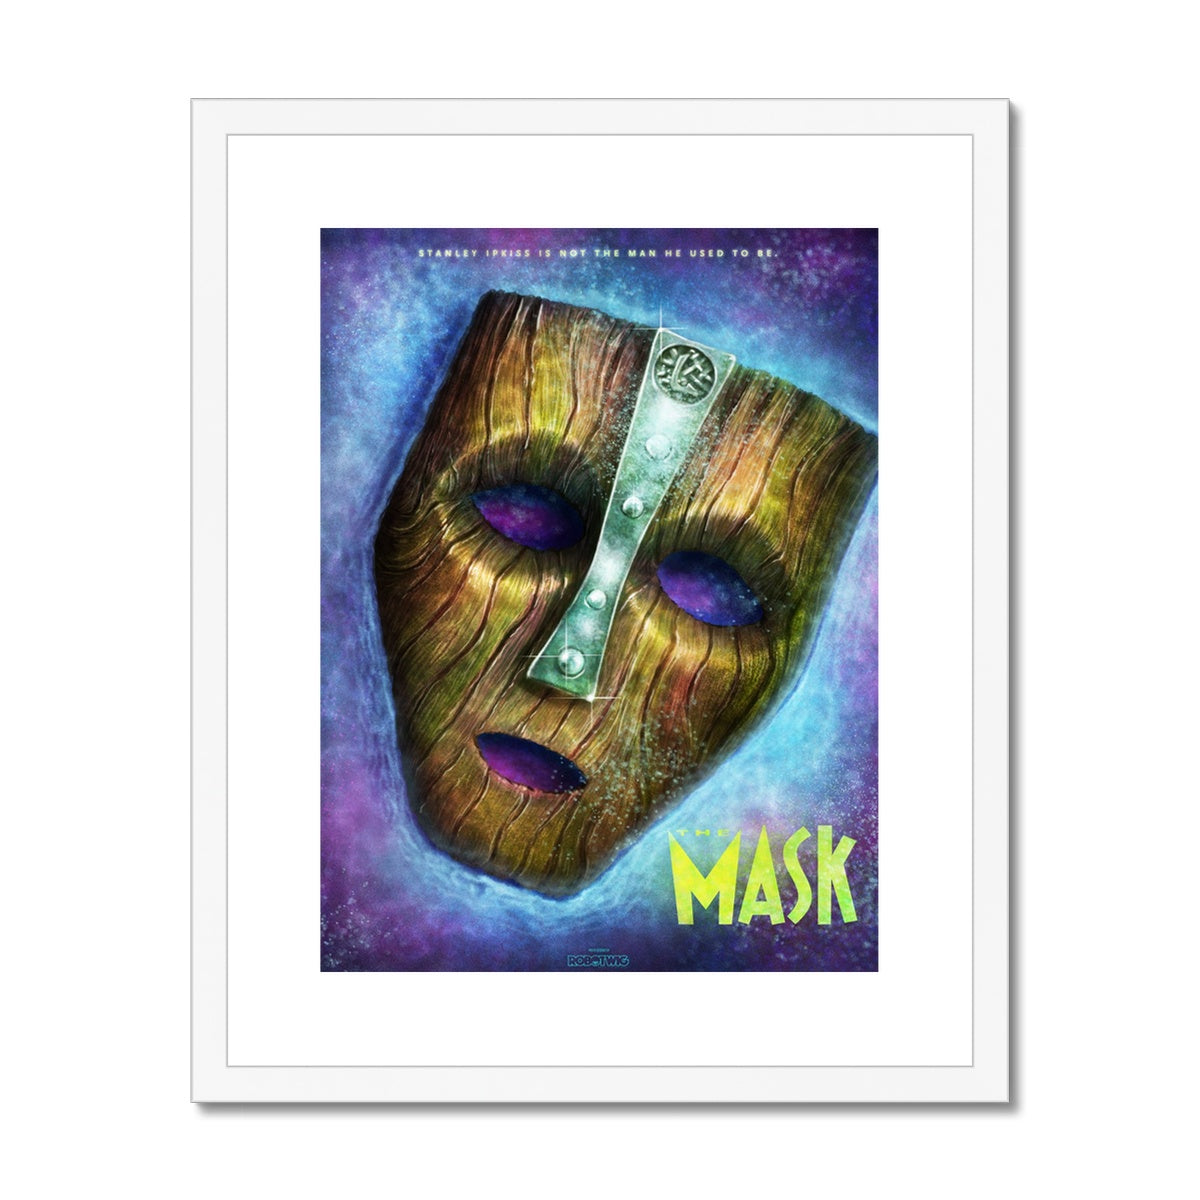 Mask Alternate Movie Poster Art Framed & Mounted Print